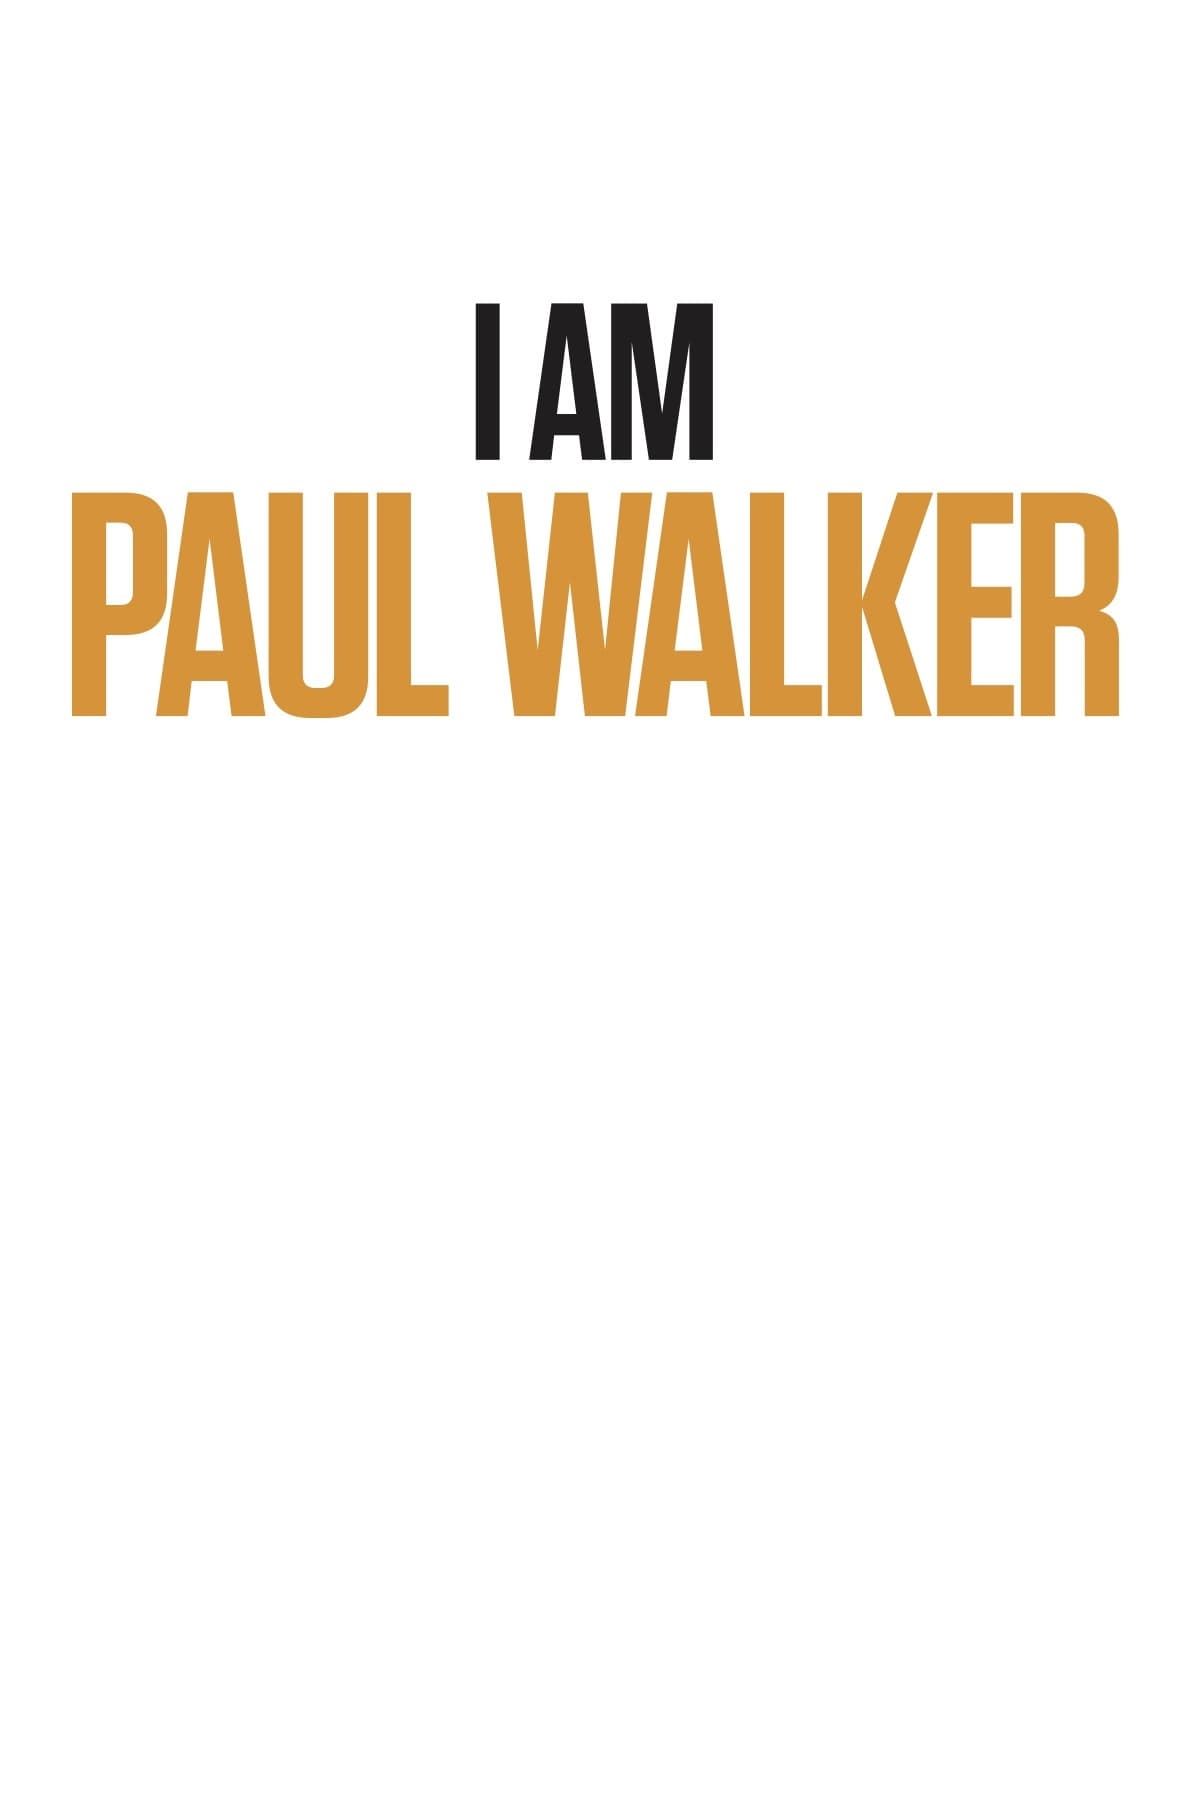 Yo soy Paul Walker